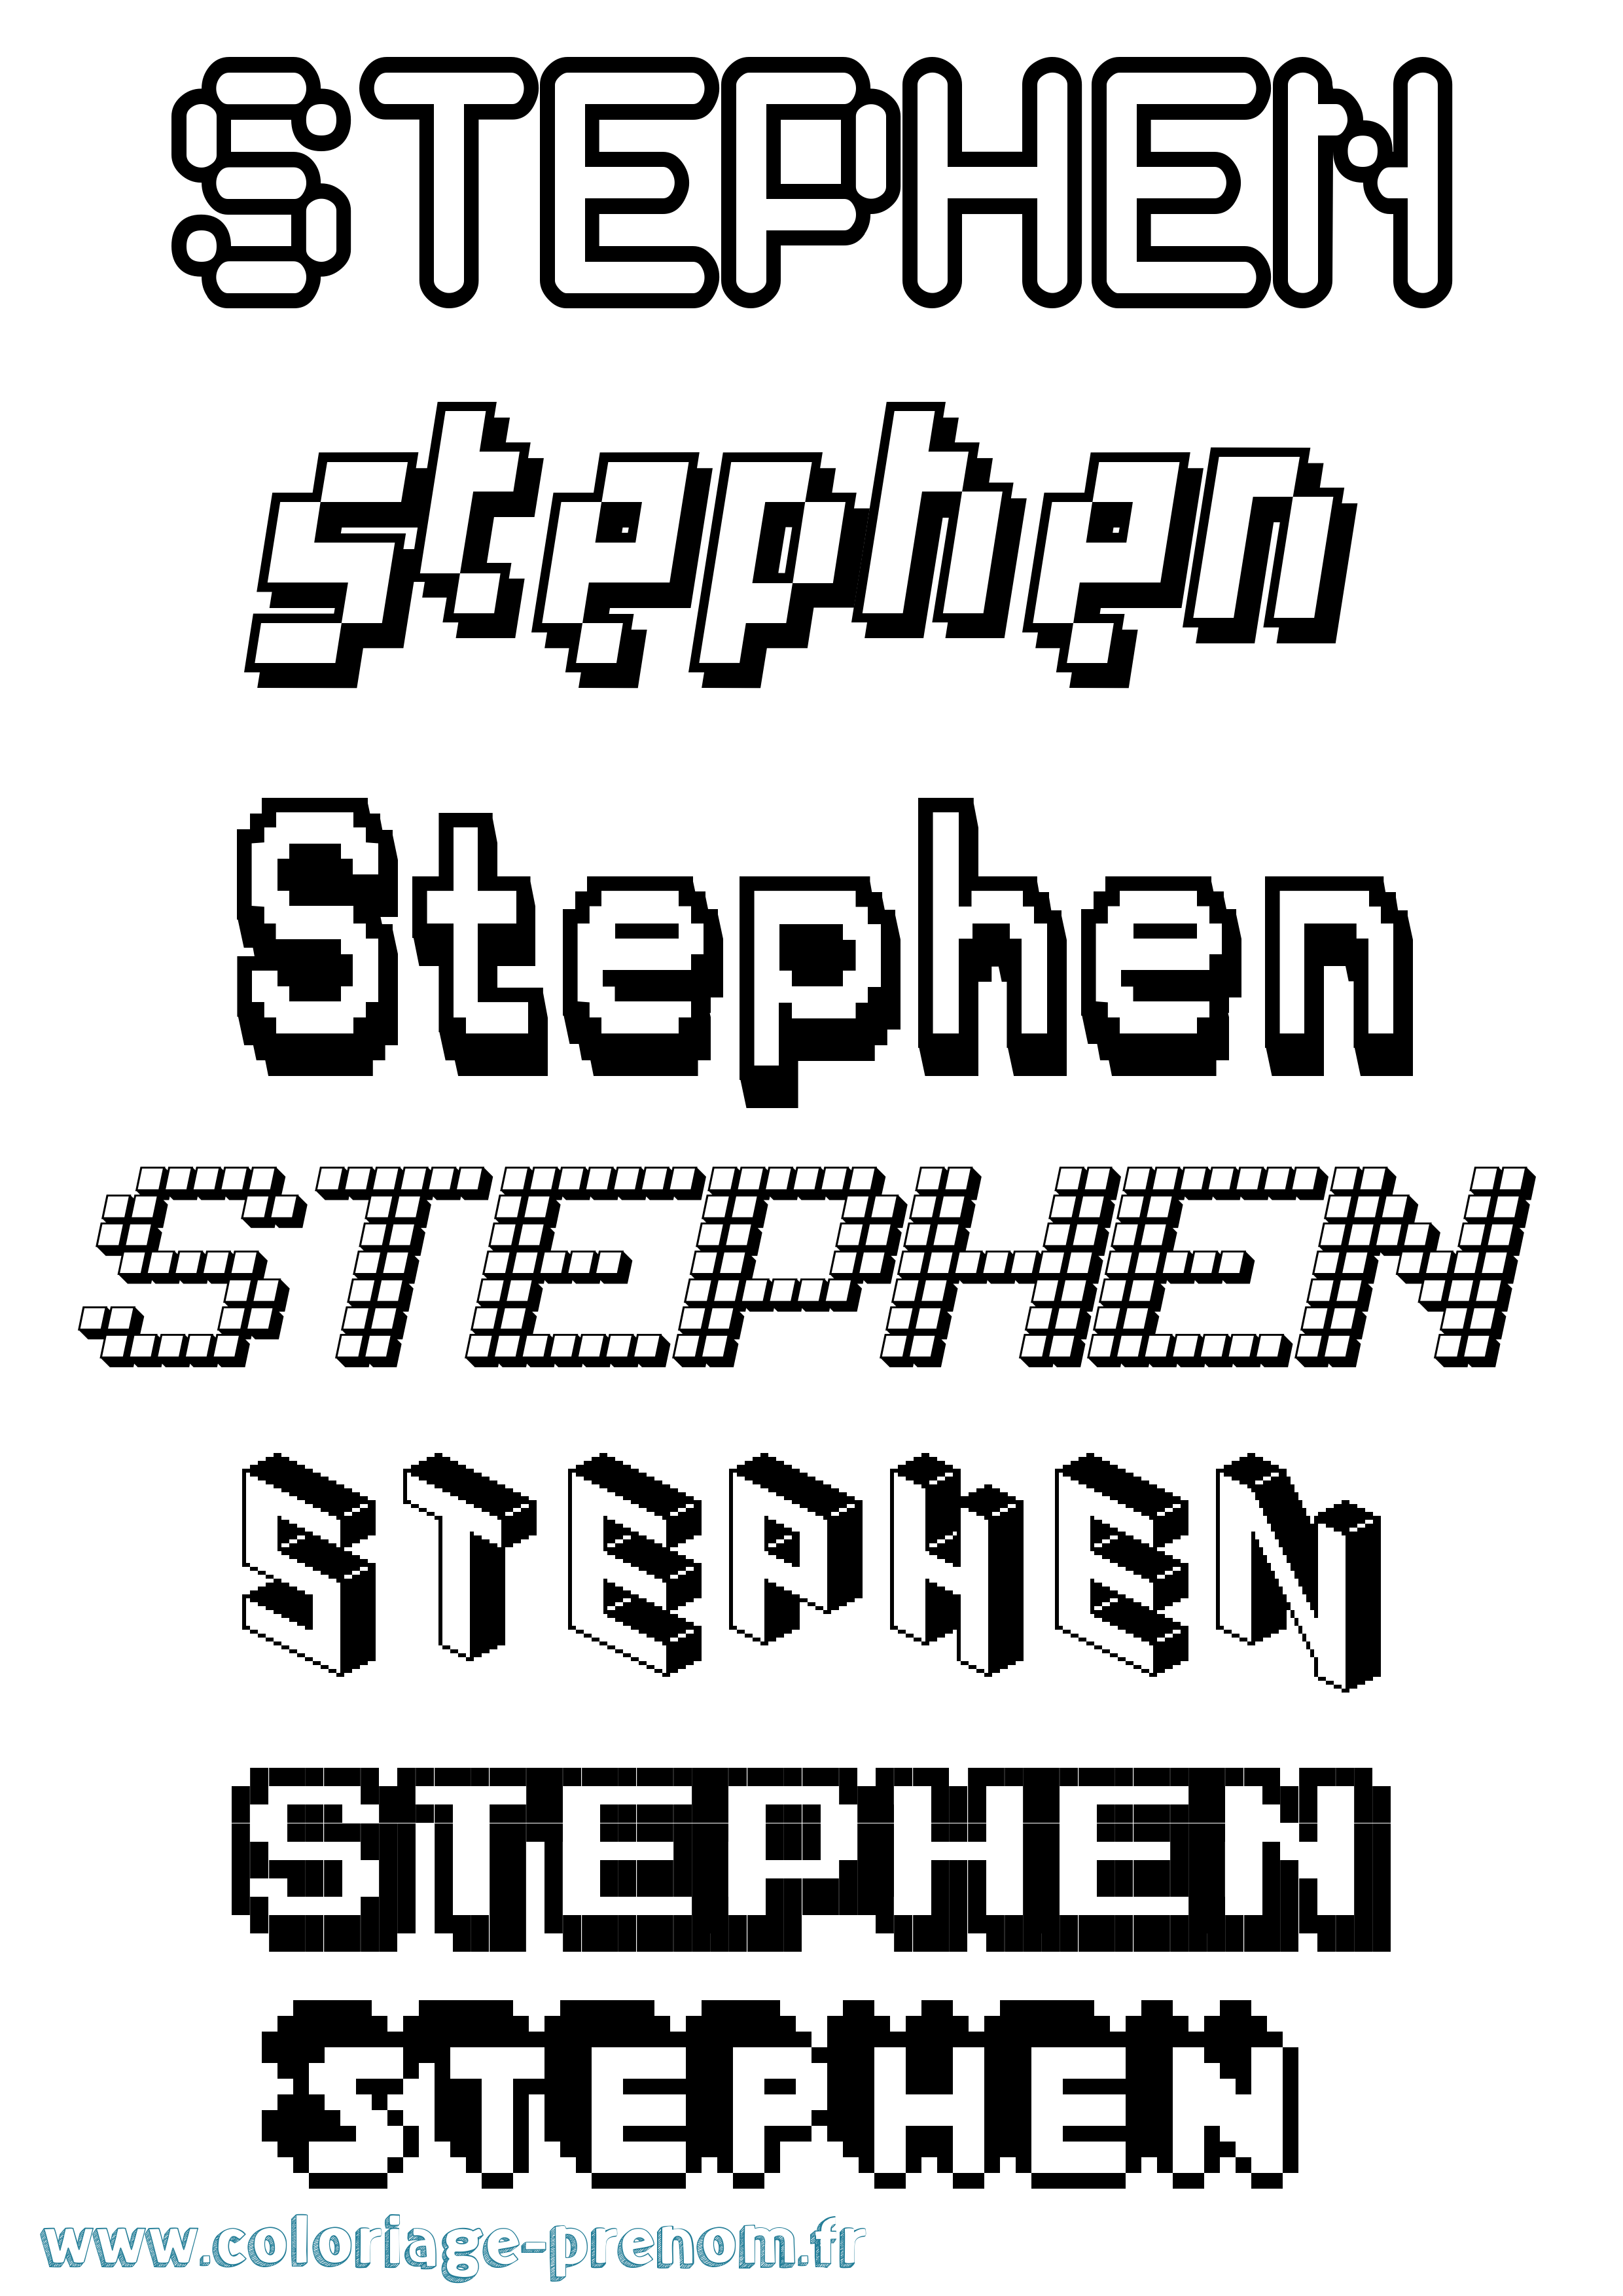 Coloriage prénom Stephen Pixel